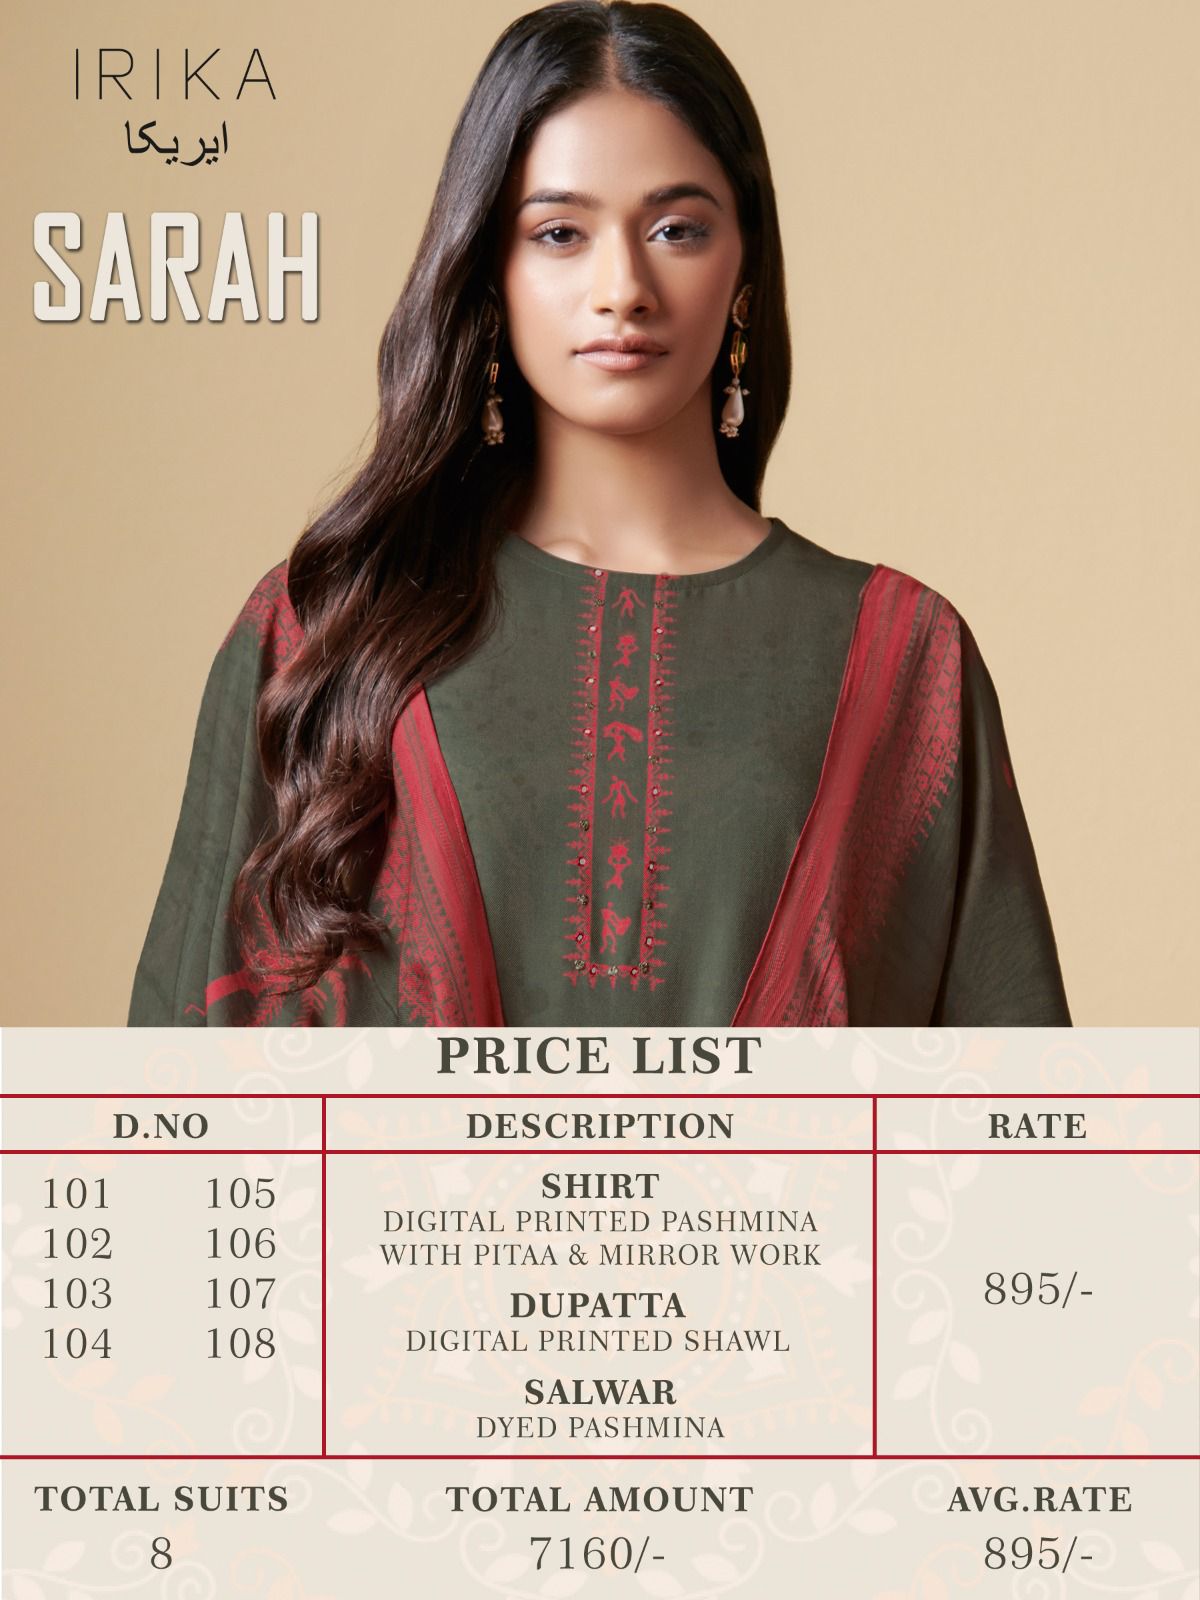 Irika Sarah collection 2